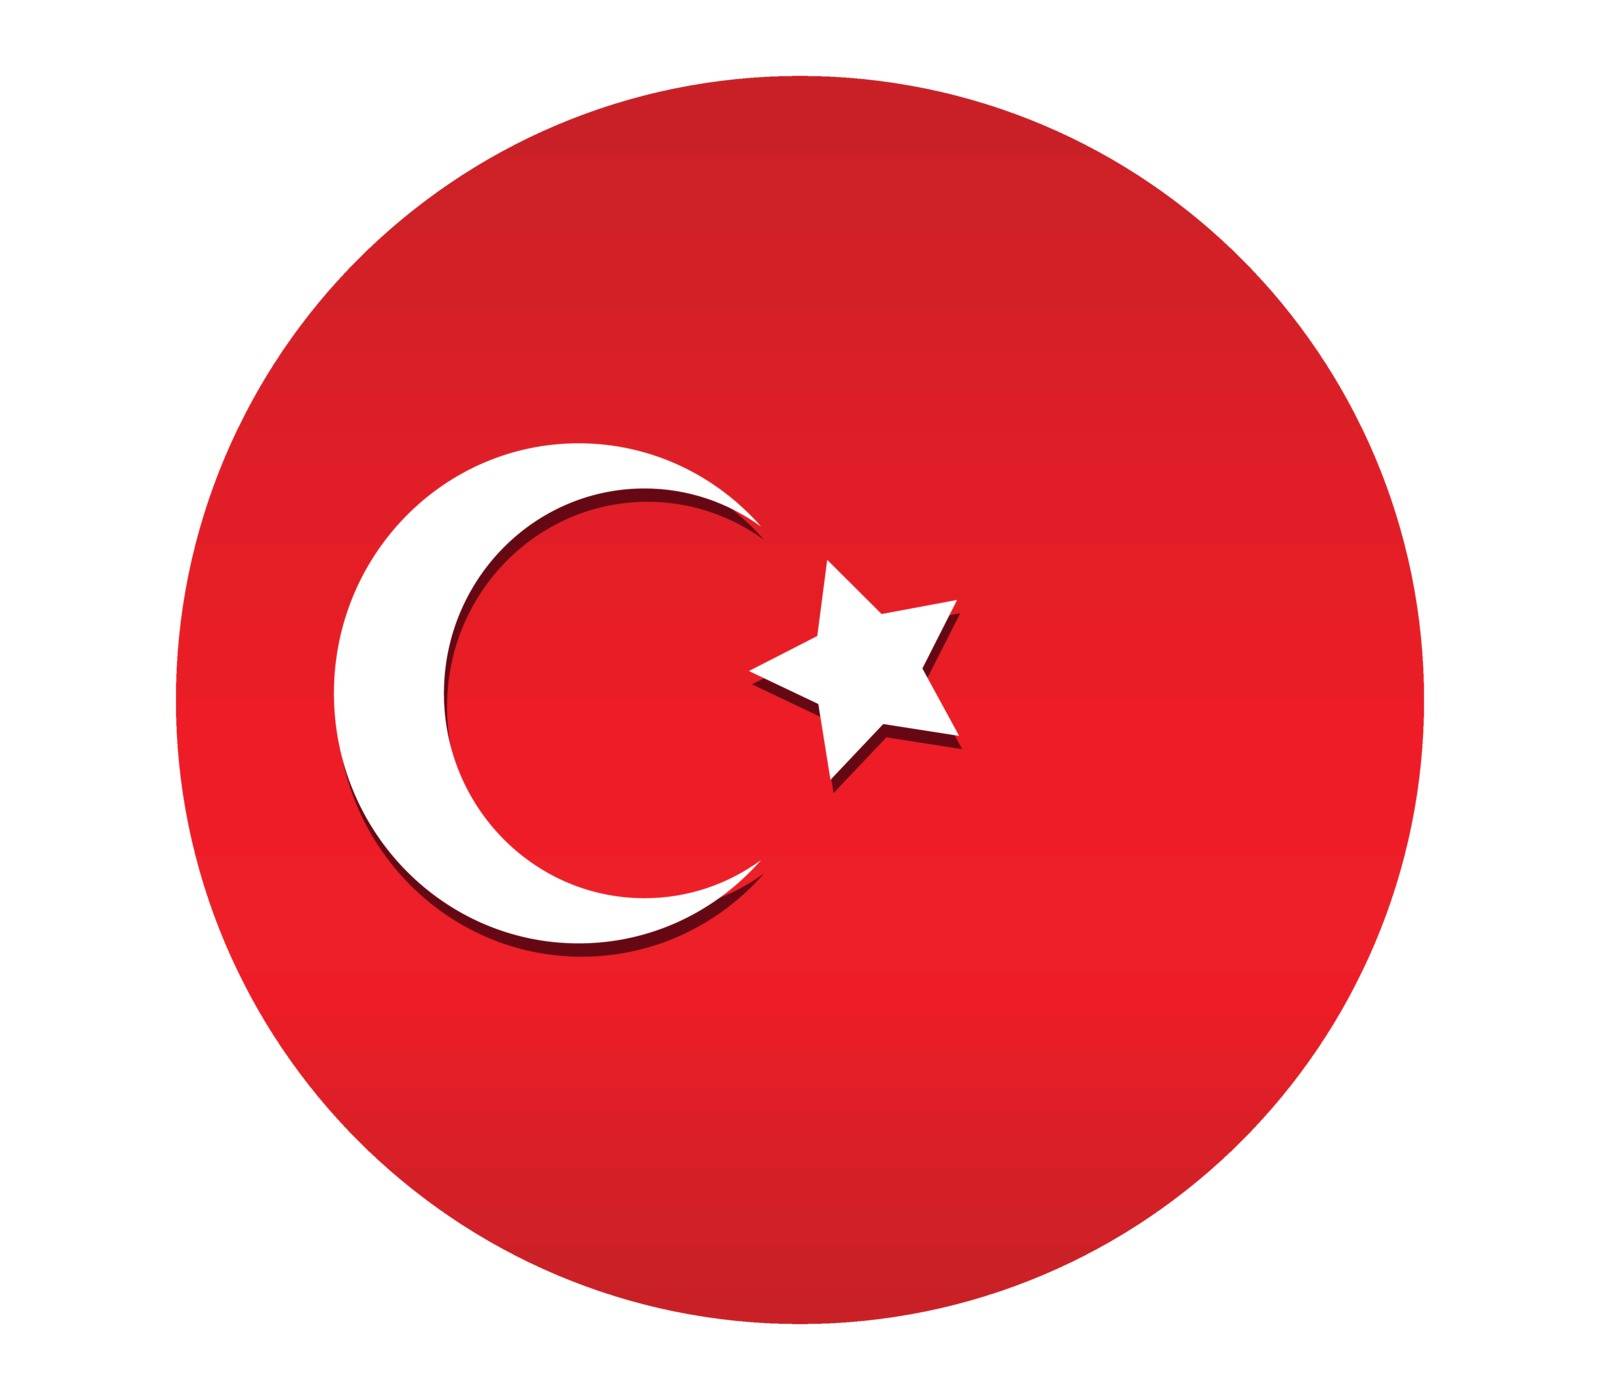 turkey flag by Mark1987